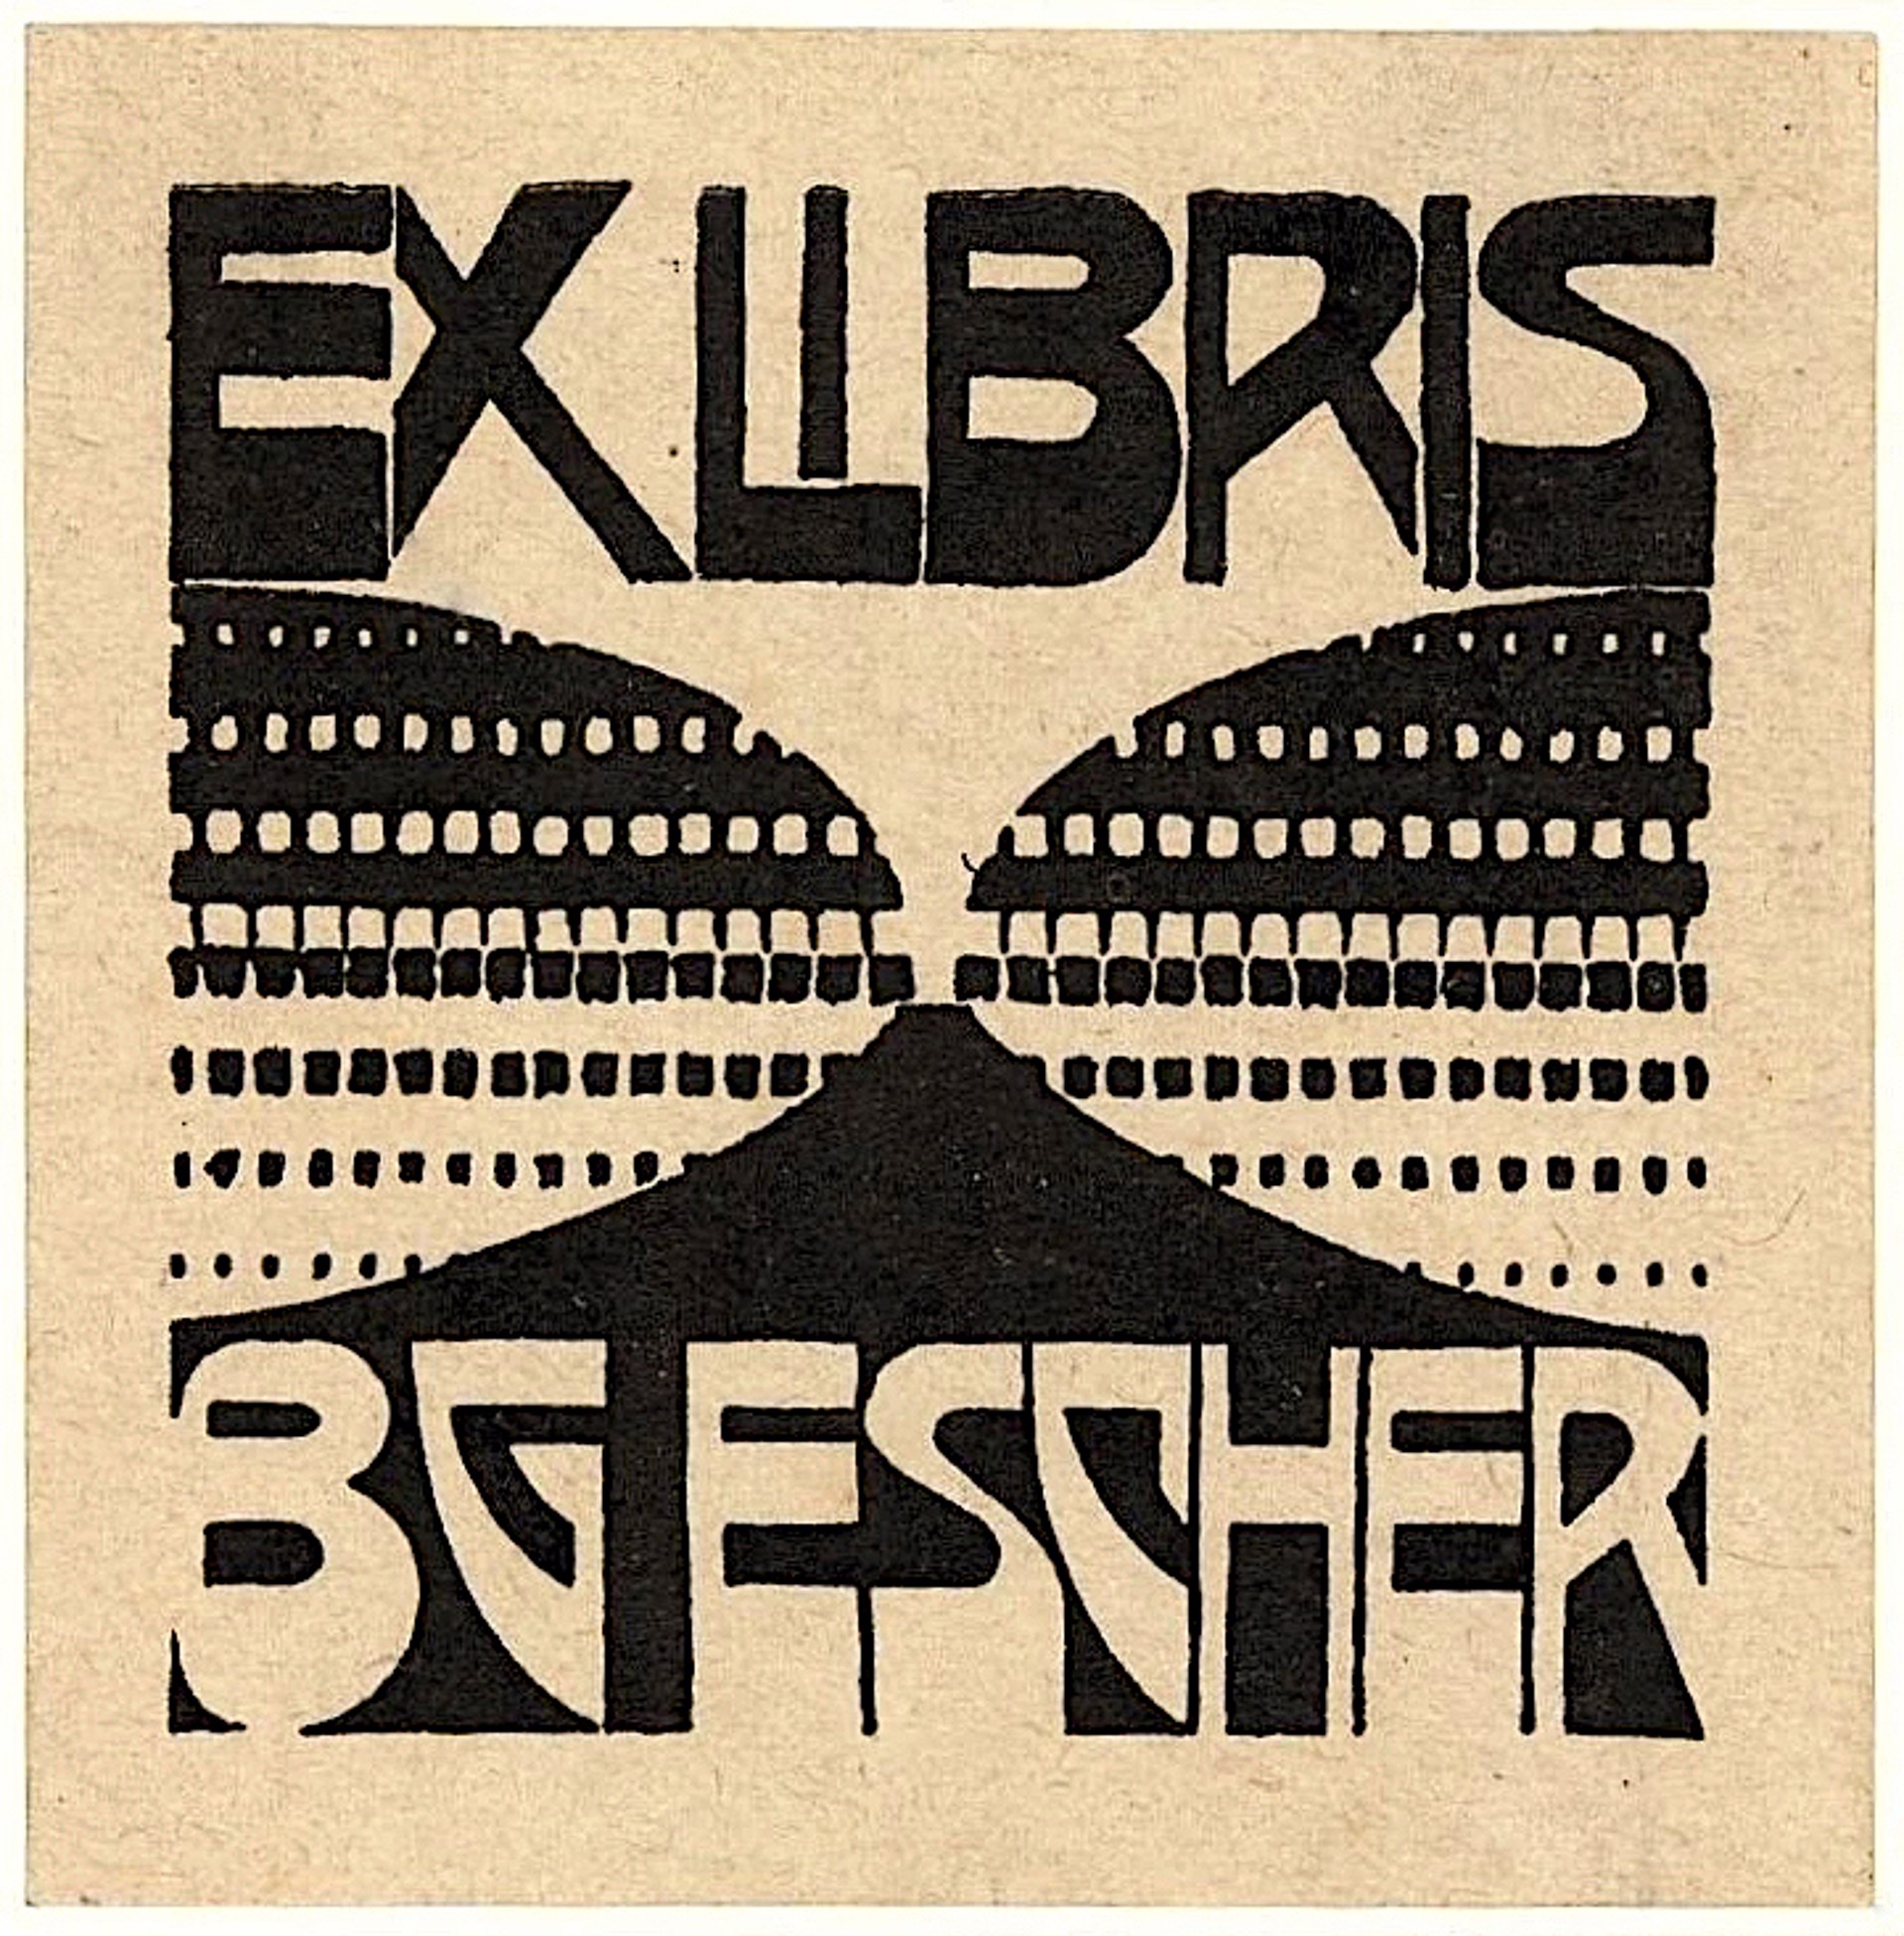 Bookplate B.G. Escher Beer by M.C. Escher